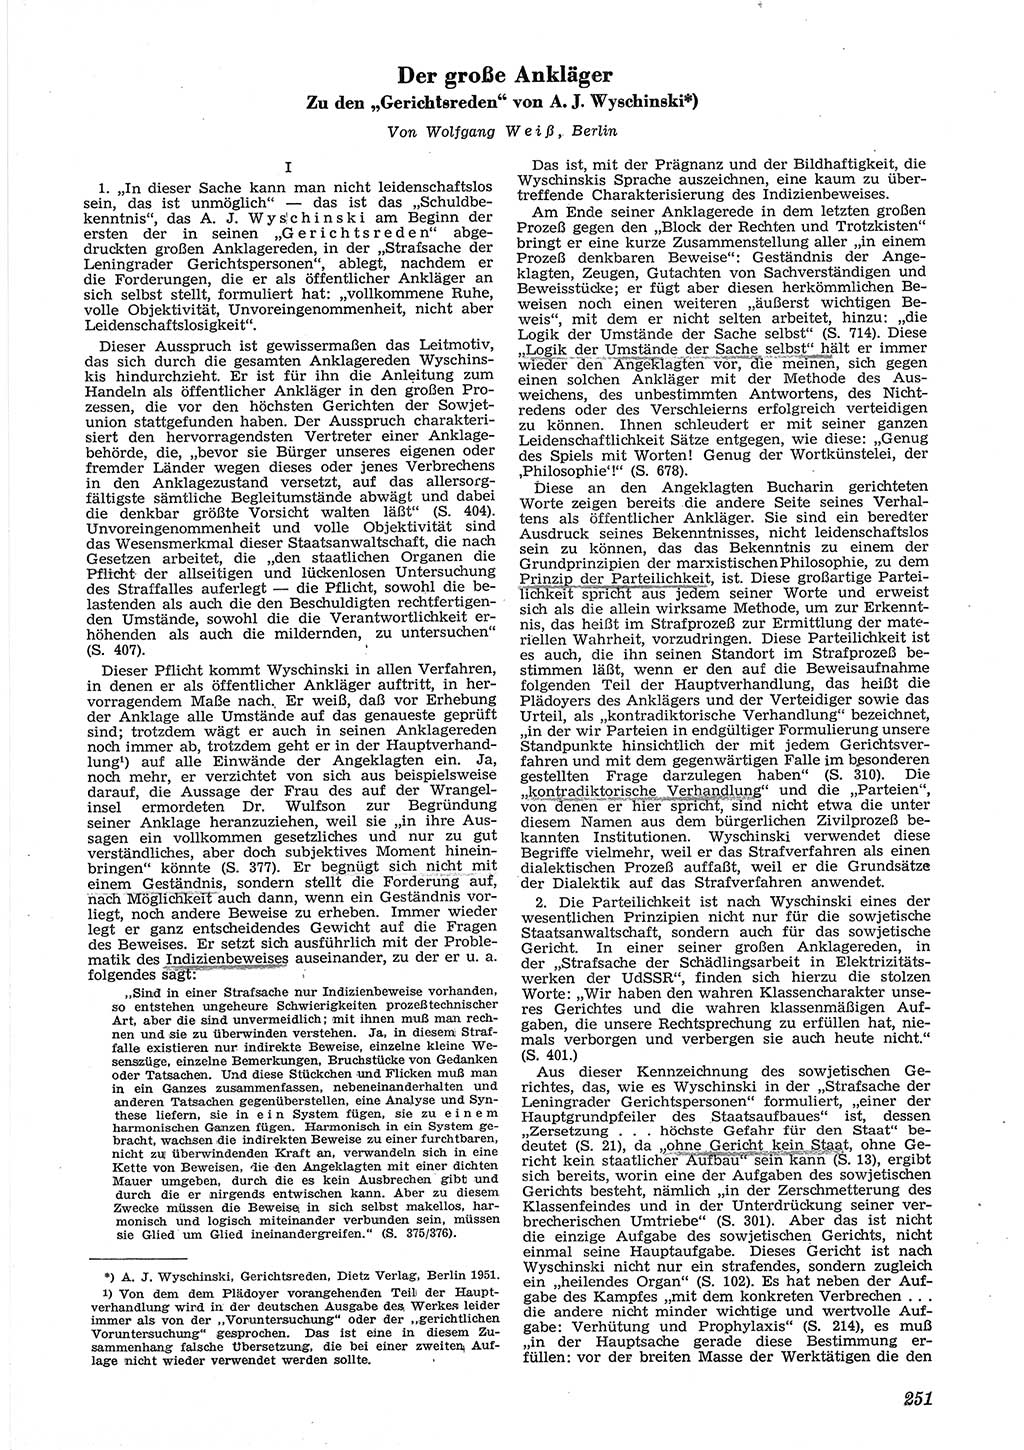 Neue Justiz (NJ), Zeitschrift für Recht und Rechtswissenschaft [Deutsche Demokratische Republik (DDR)], 6. Jahrgang 1952, Seite 251 (NJ DDR 1952, S. 251)